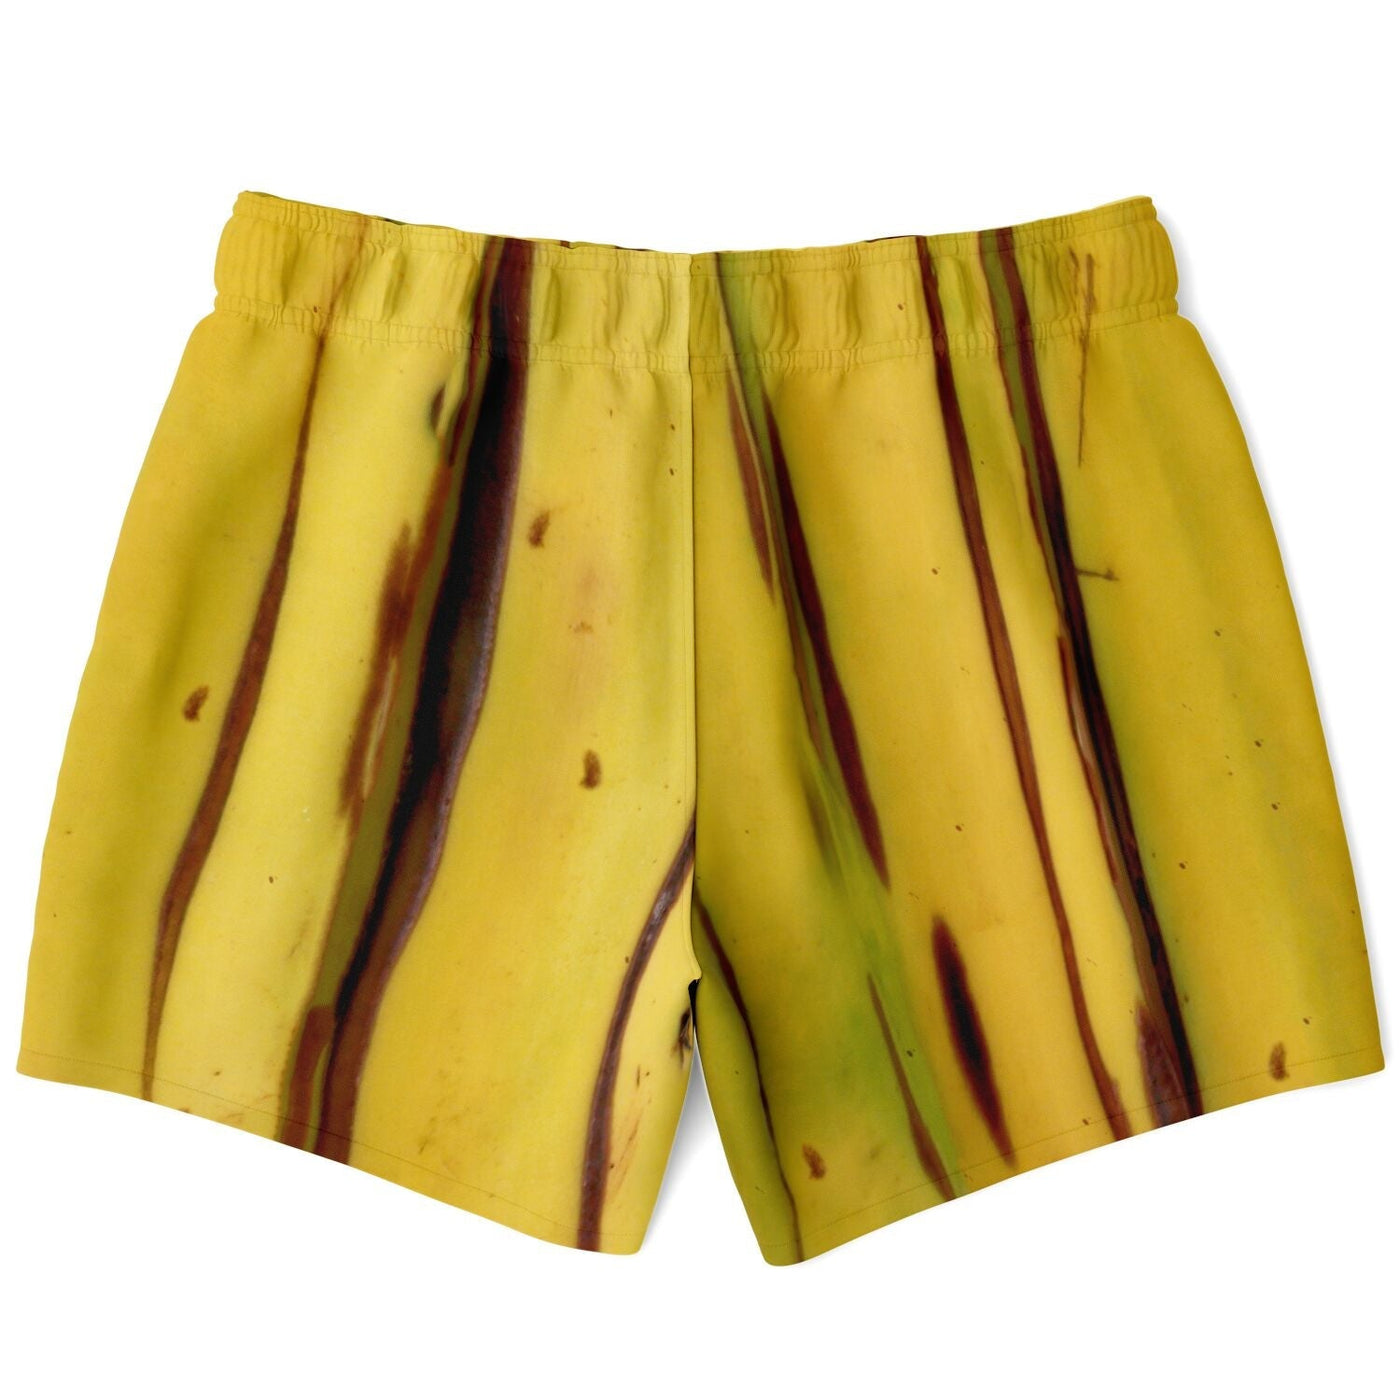 I'm Banana - Banana Peel Pattern Swim trunks